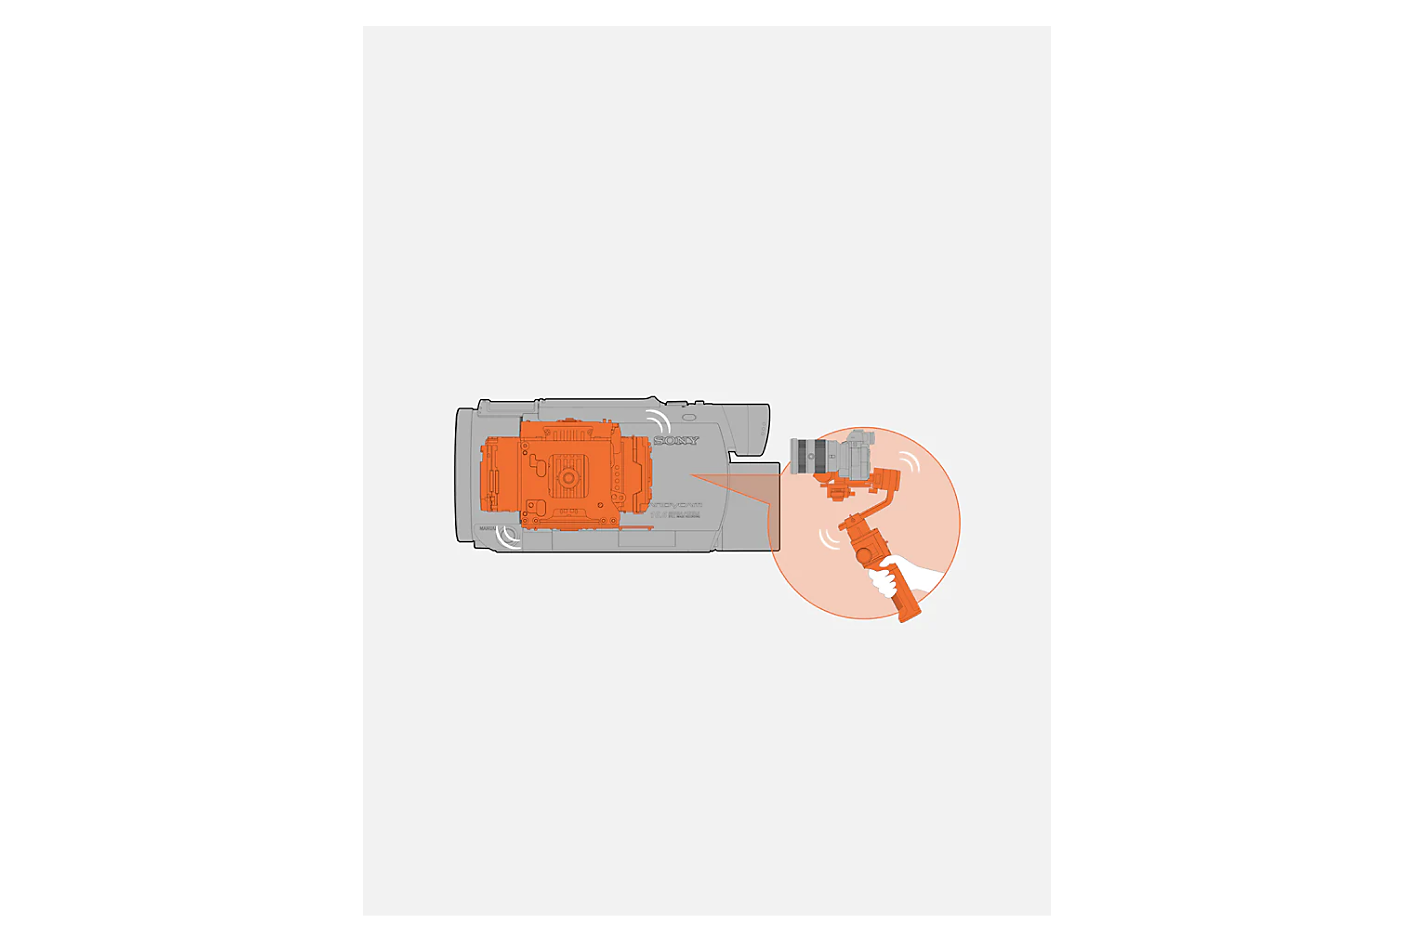 رسم تخطيطي لكاميرا فيديو رمادية مع آلية ذات محورين بالداخل بلون برتقالي